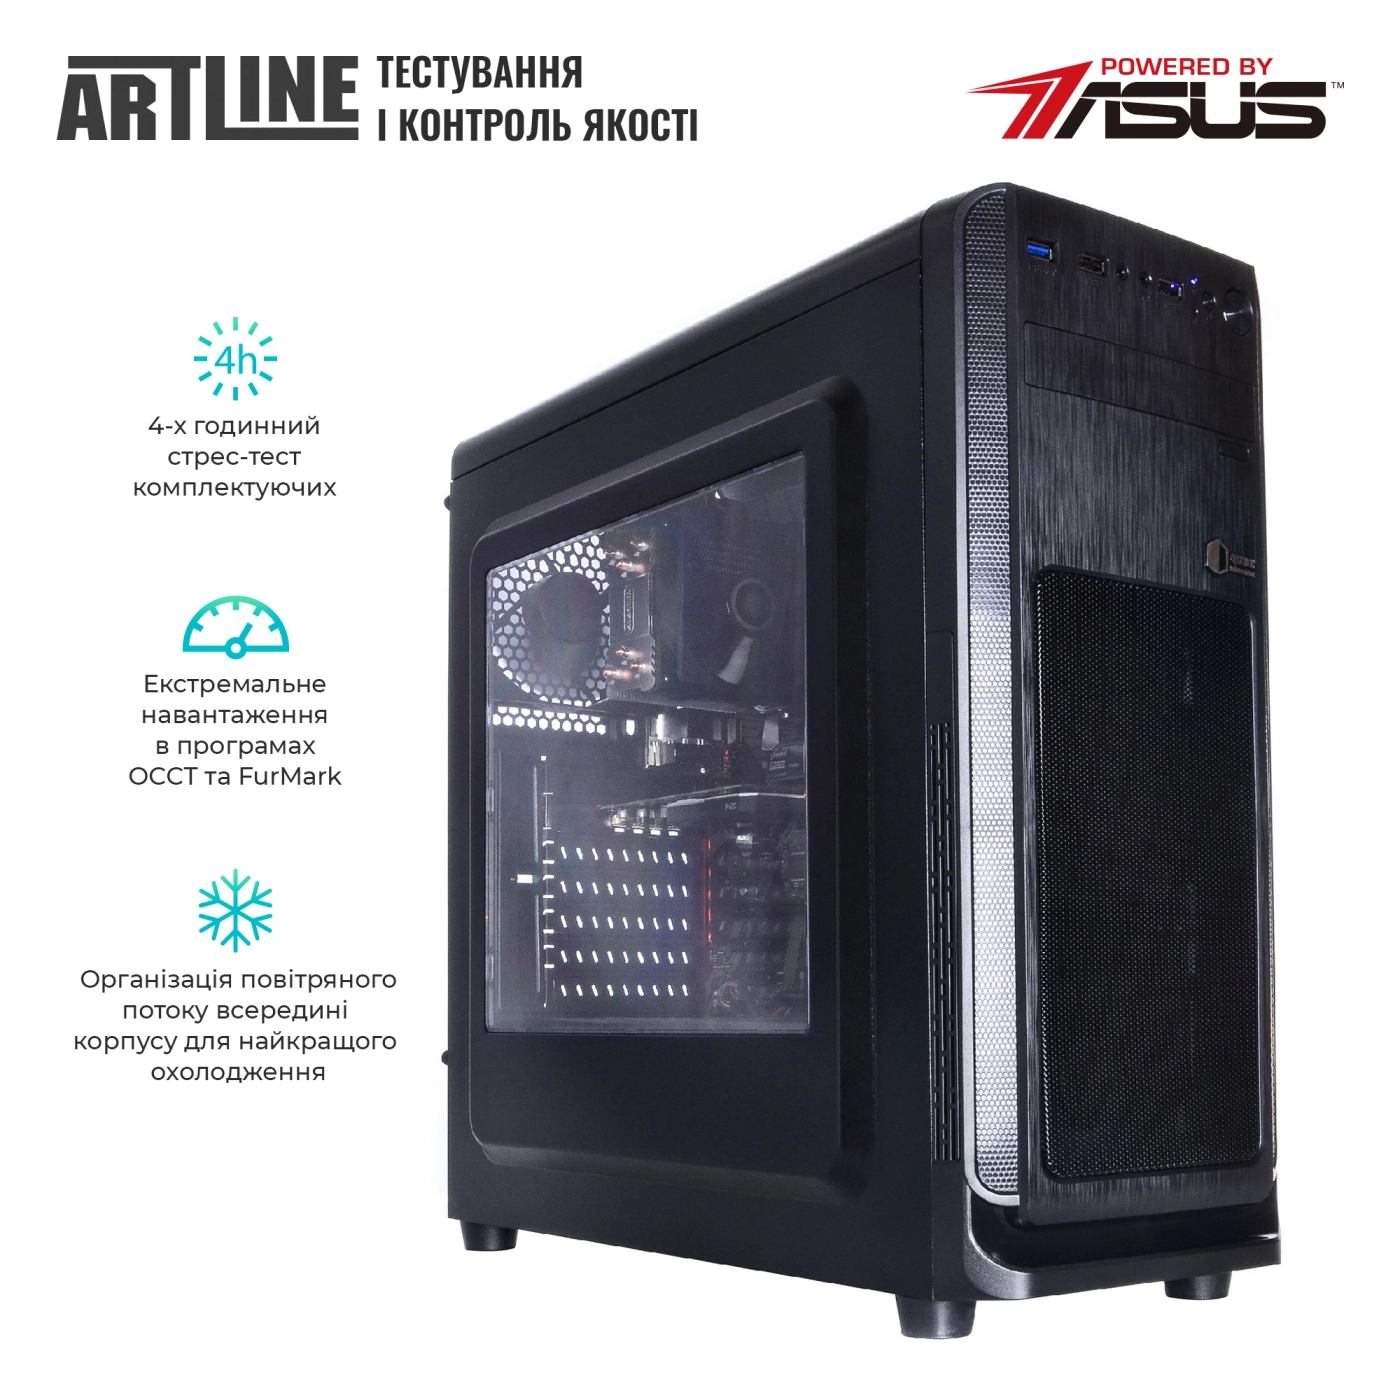 Купить Сервер ARTLINE Business T13v12 - фото 6